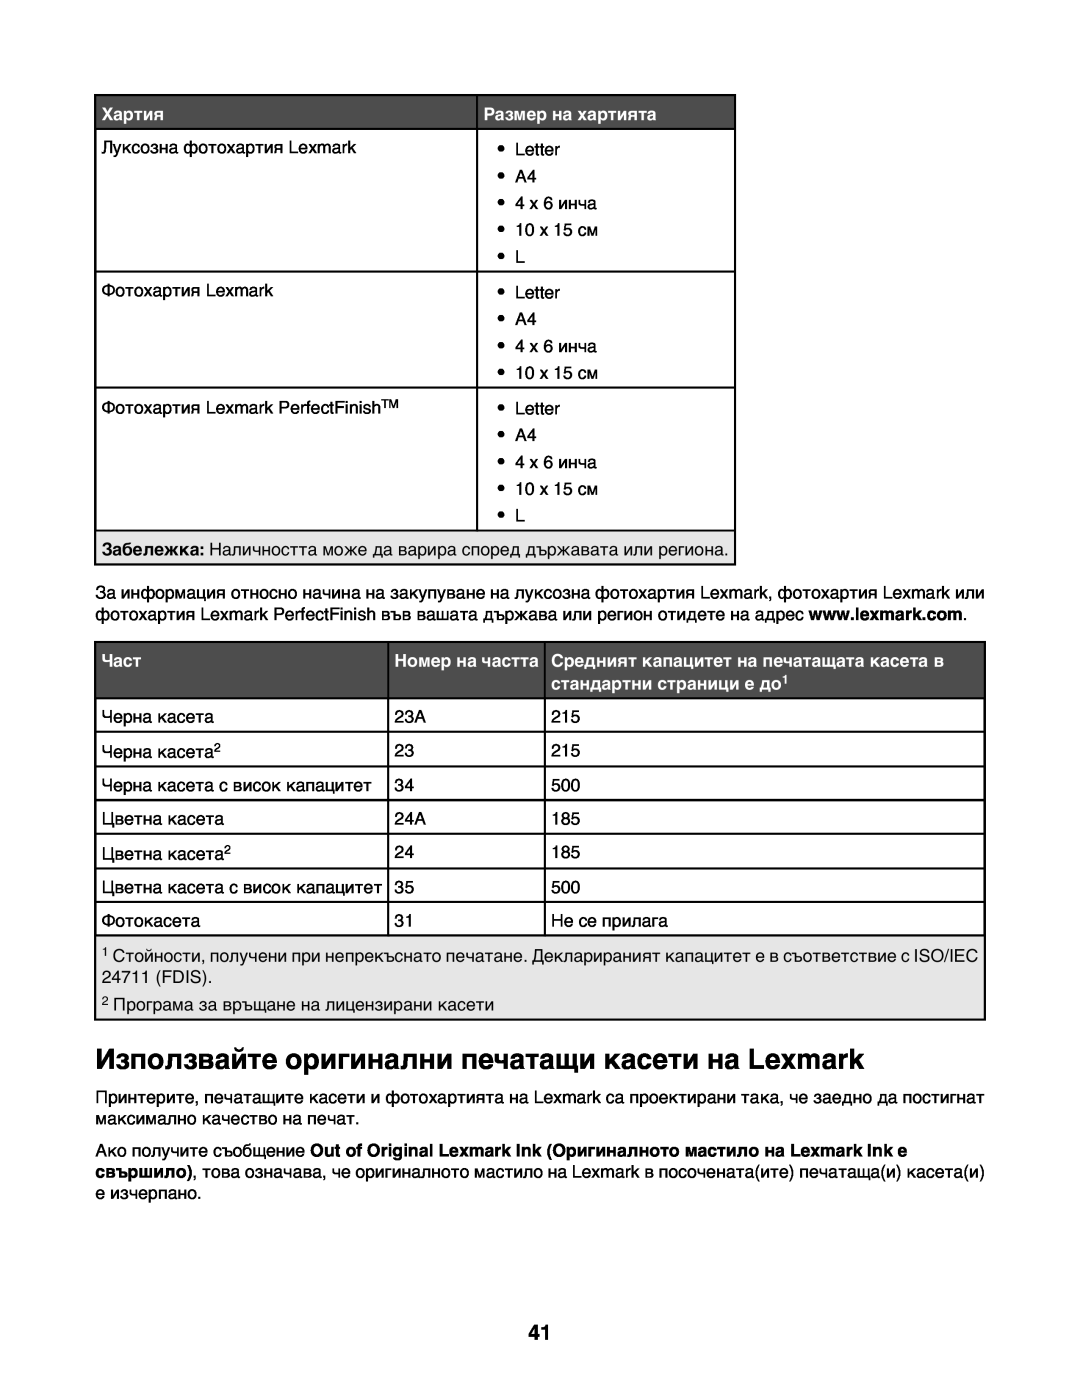 Lexmark 1400 manual Използвайте оригинални печатащи касети на Lexmark, Хартия, Размер на хартията, Част, Номер на частта 